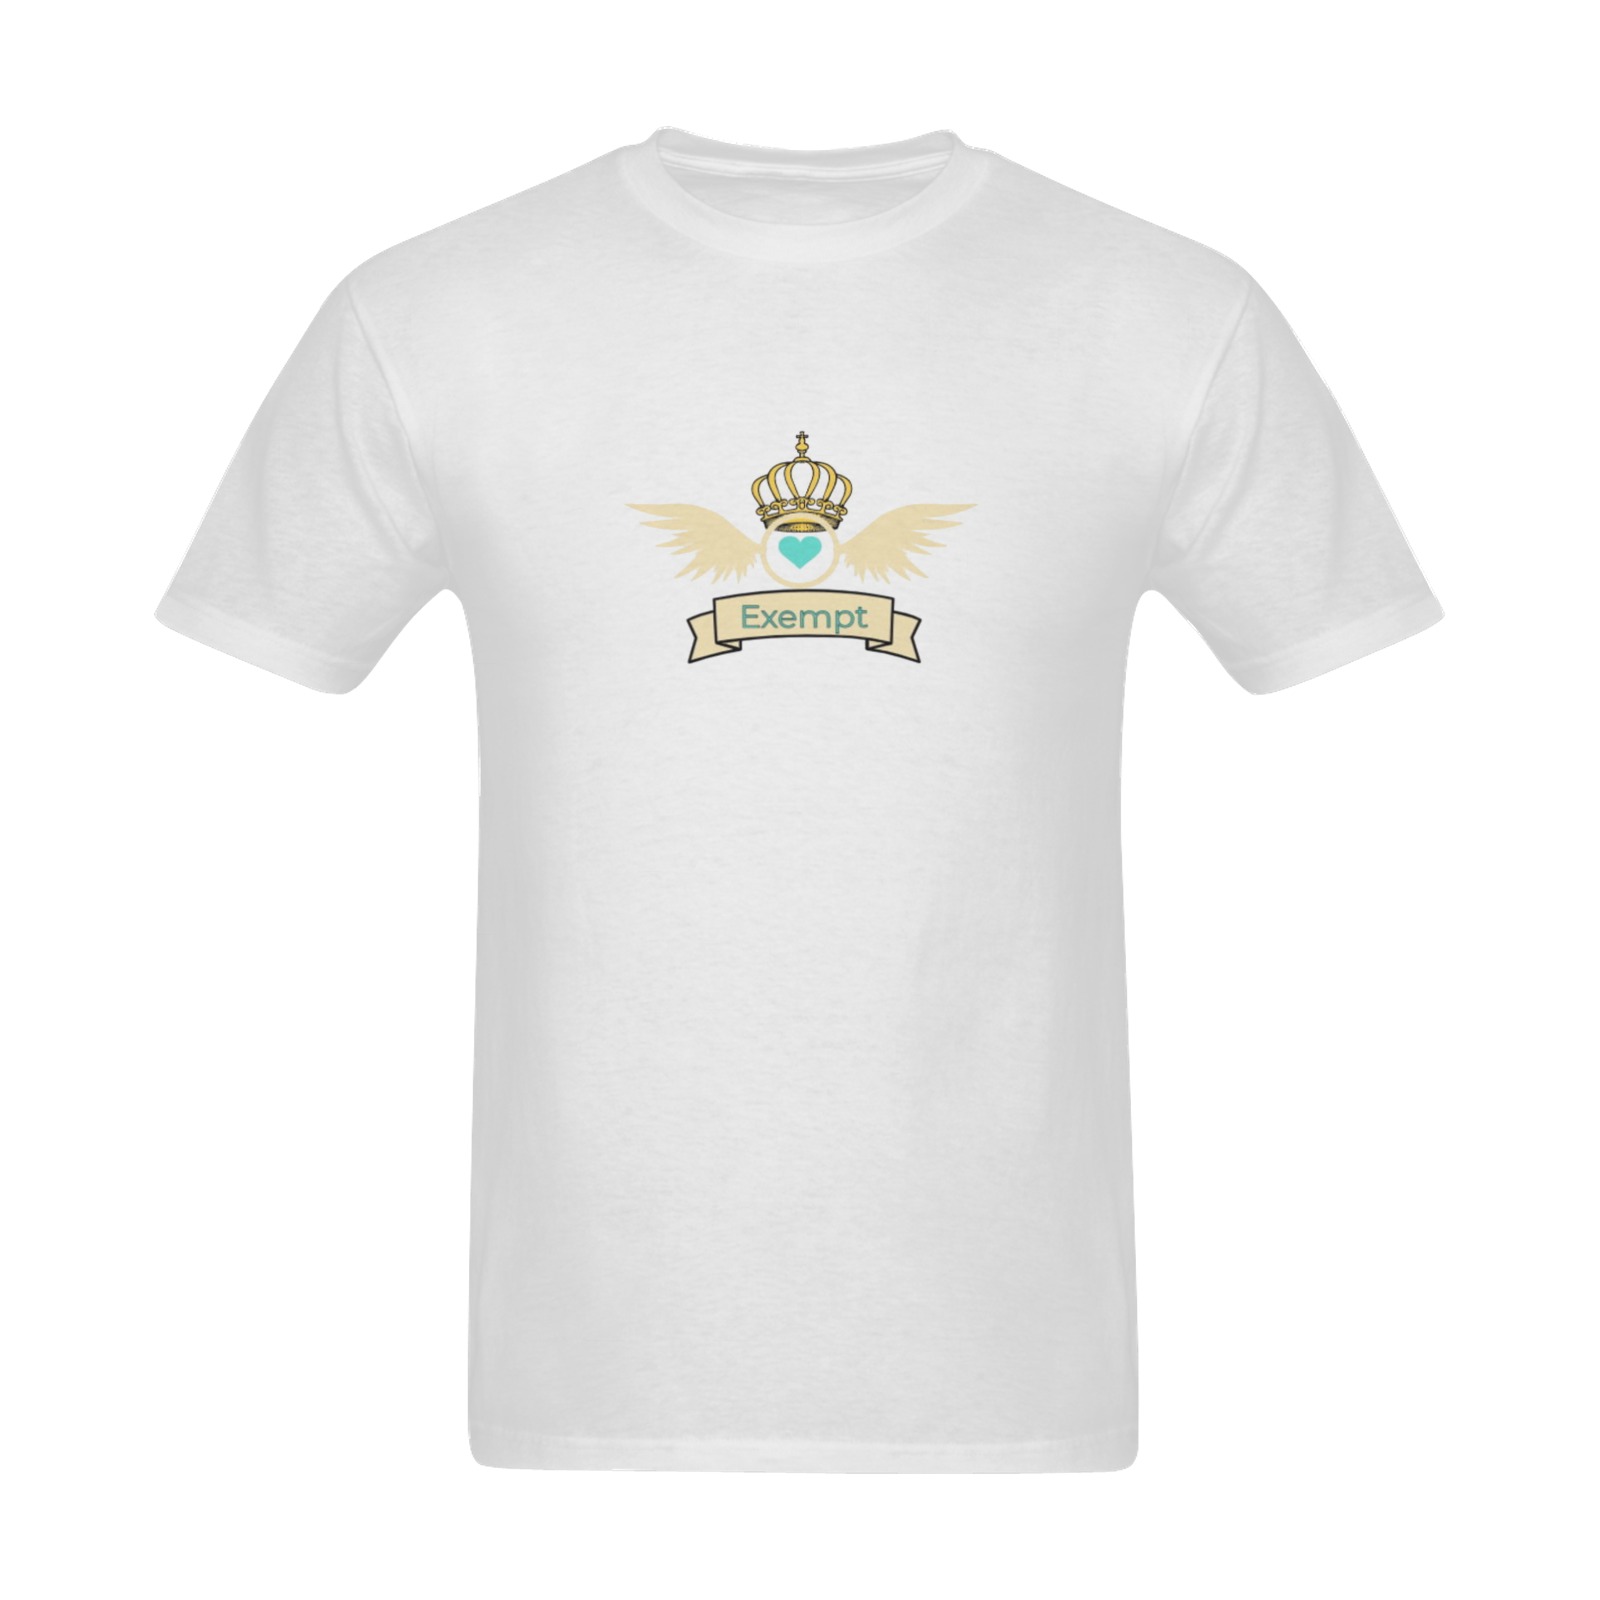 'Exe.mpt' - heart space logo  - White Tee for men Sunny Men's T- shirt (Model T06)